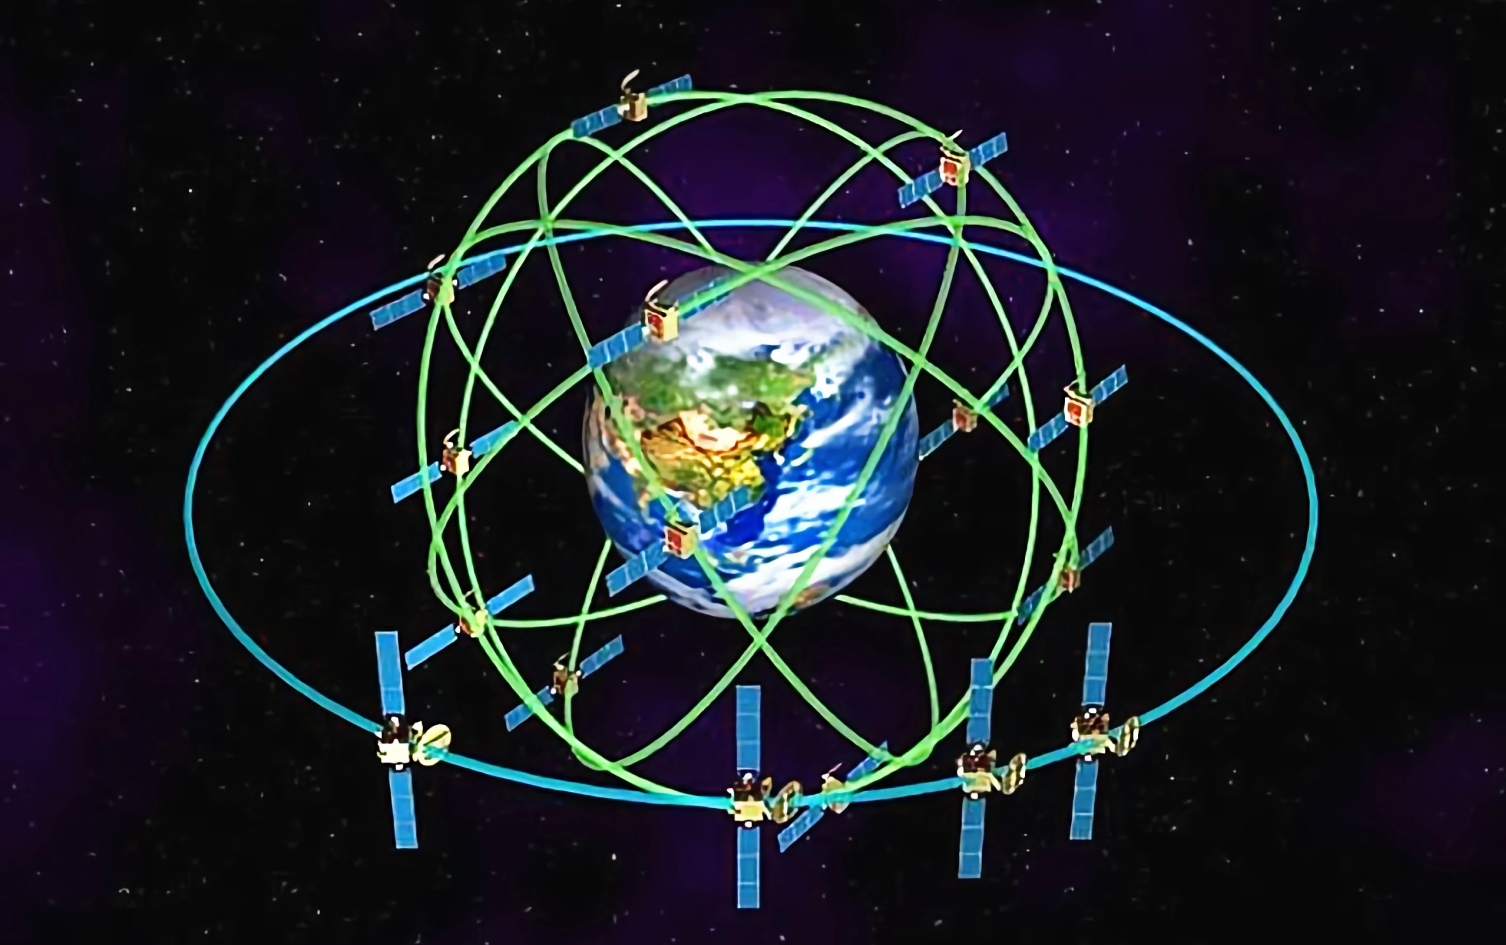 经过20年来的精心打磨,中国北斗卫星终成大器,已经开始向全球提供